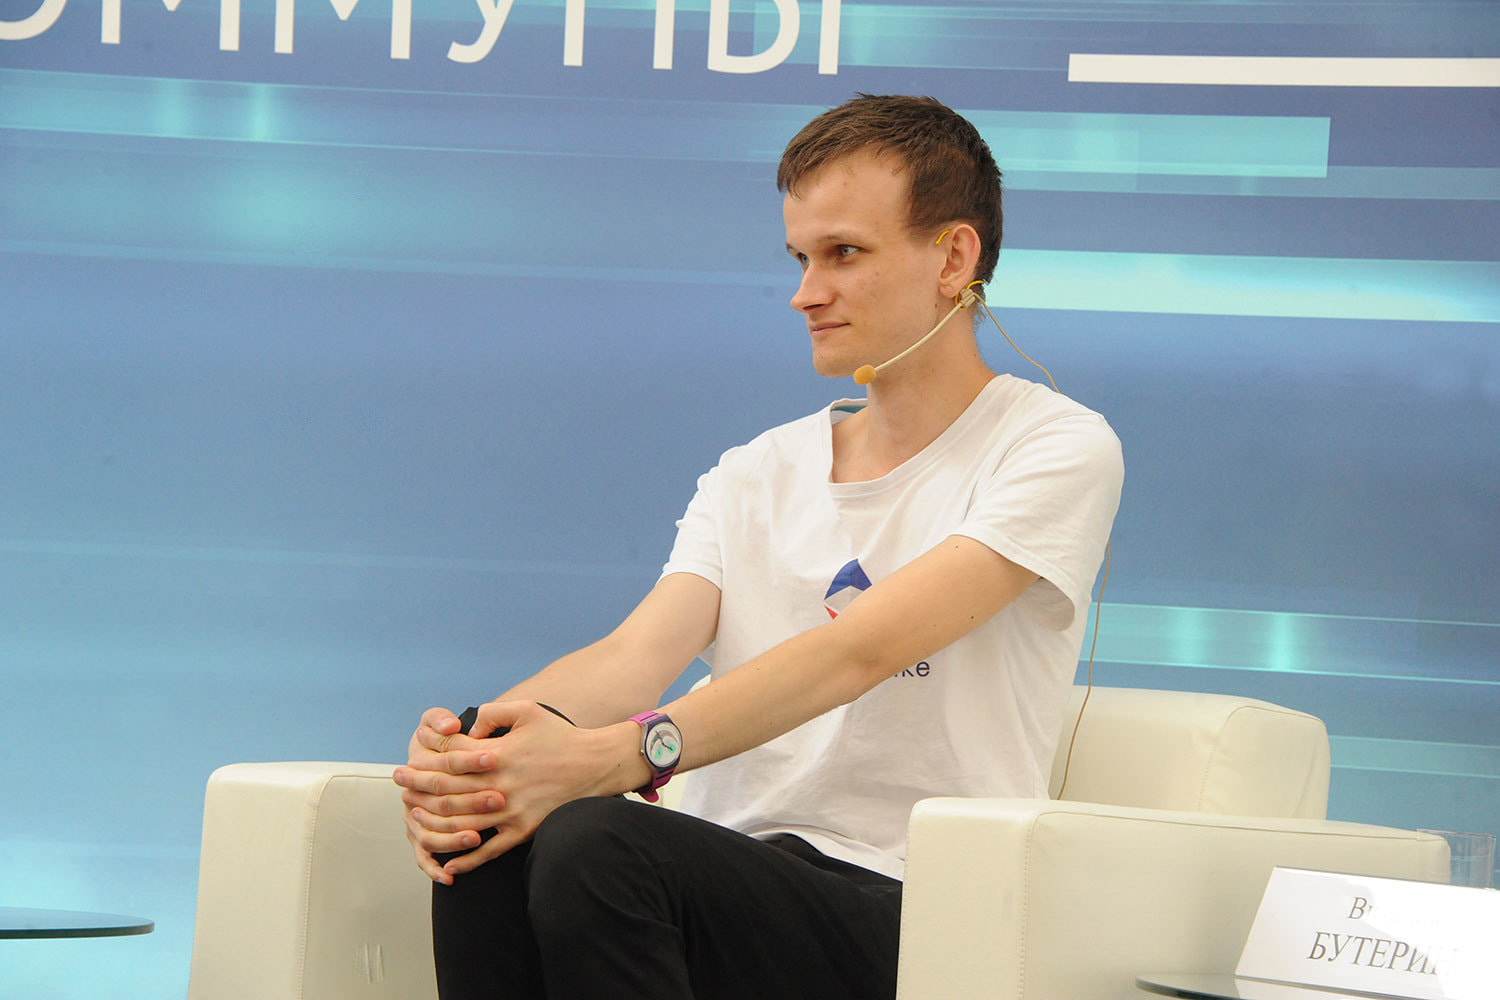 24-летний Виталик Бутерин - уроженец России, но вырос в Канаде. Он изобрел криптовалюту Ethereum, которая занимает второе по популярности место в мире после биткойна. Состояние Бутерина может составлять $400-500 млн